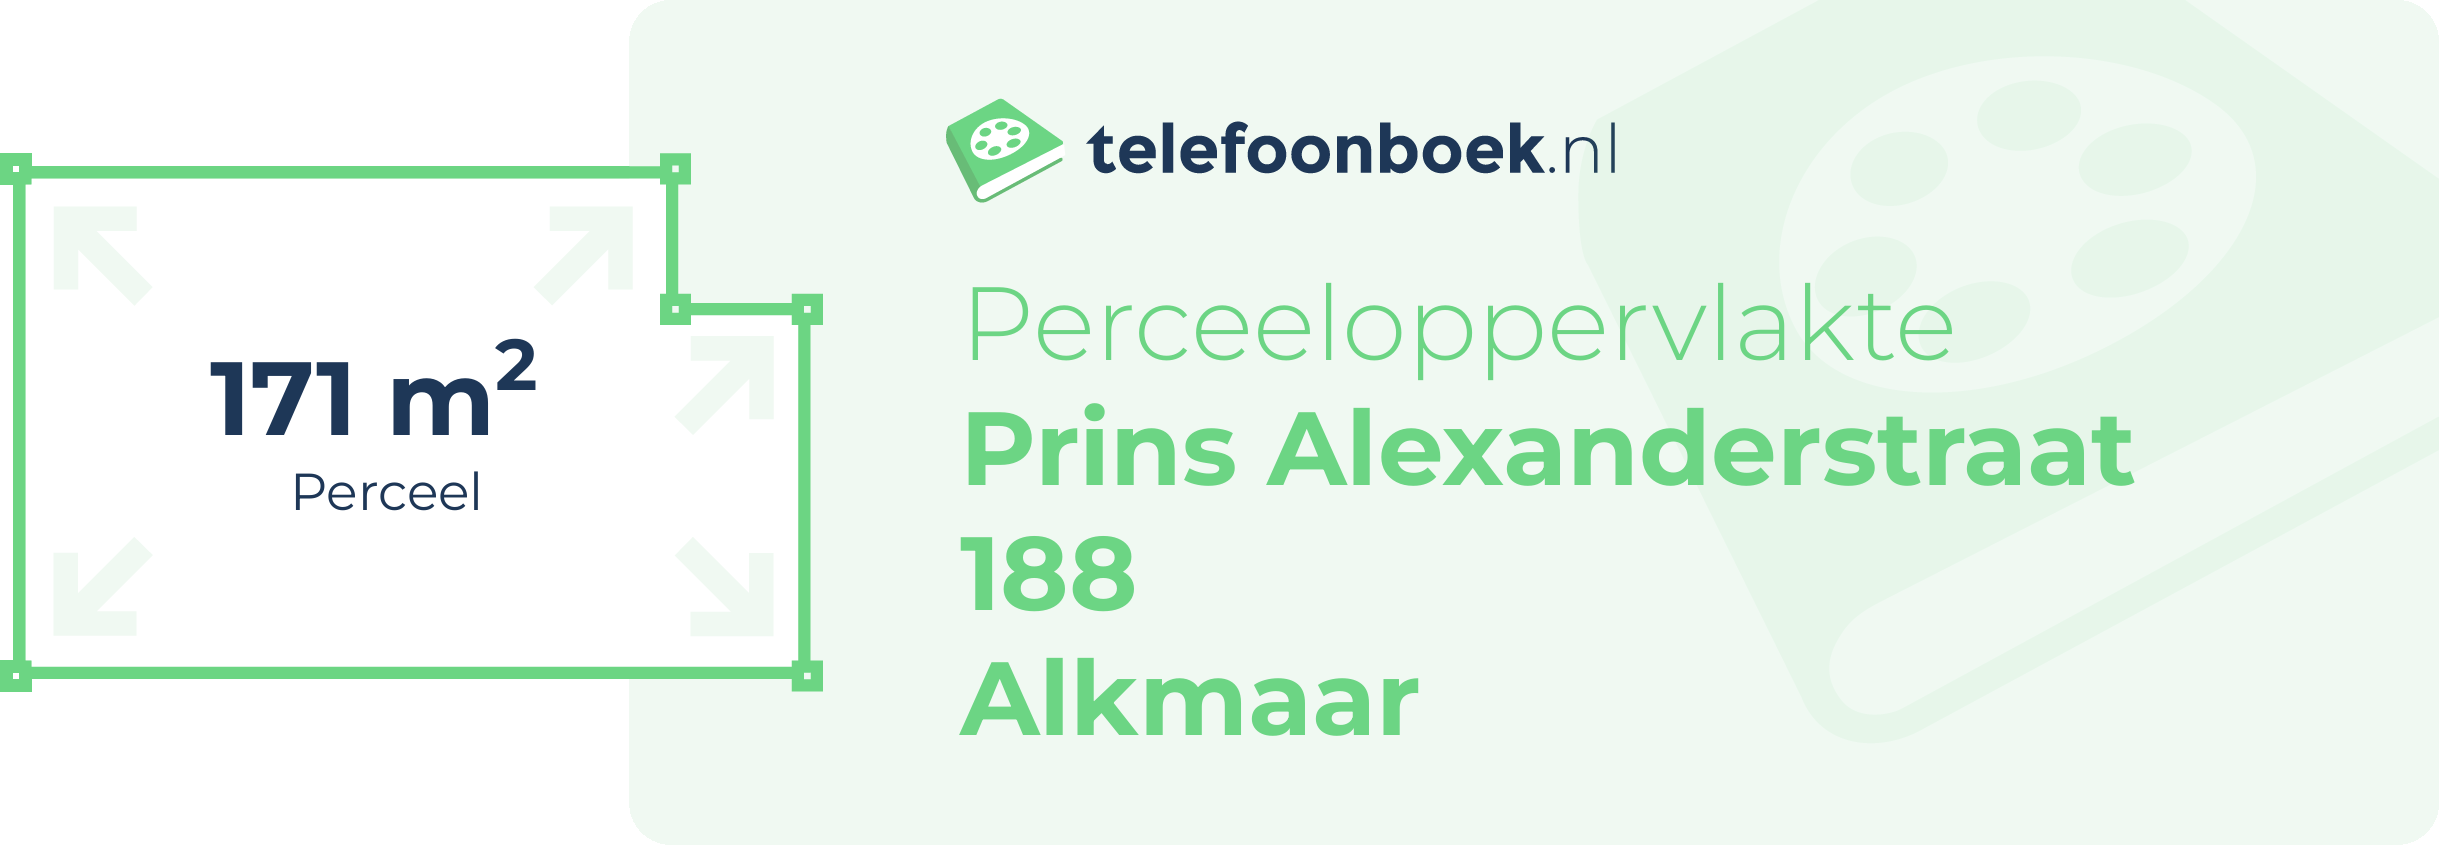 Perceeloppervlakte Prins Alexanderstraat 188 Alkmaar